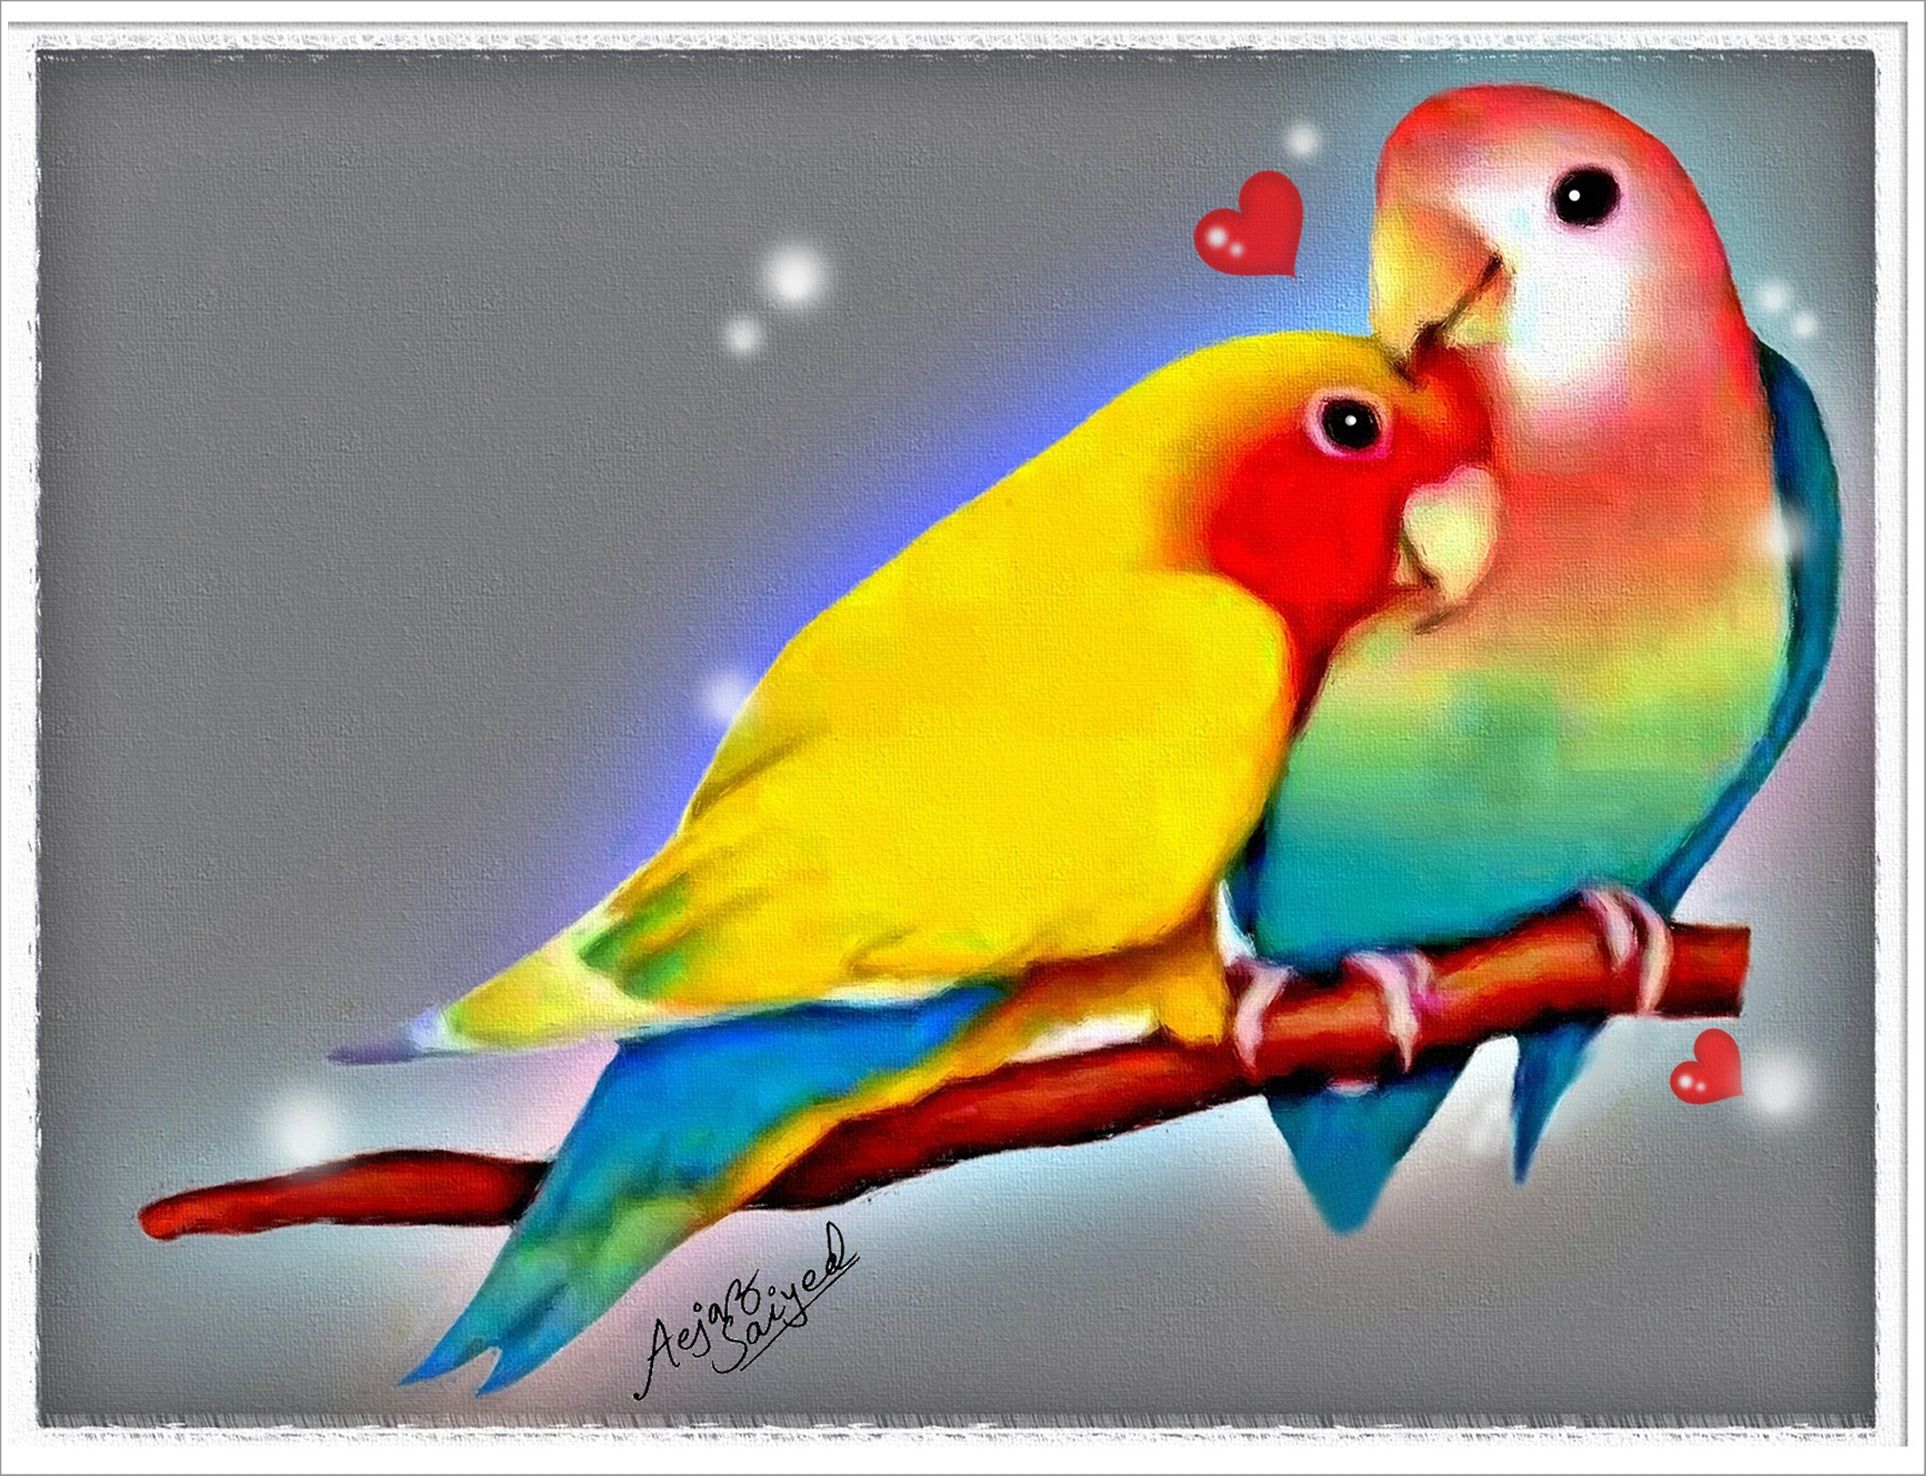 3D Love Birds Wallpapers